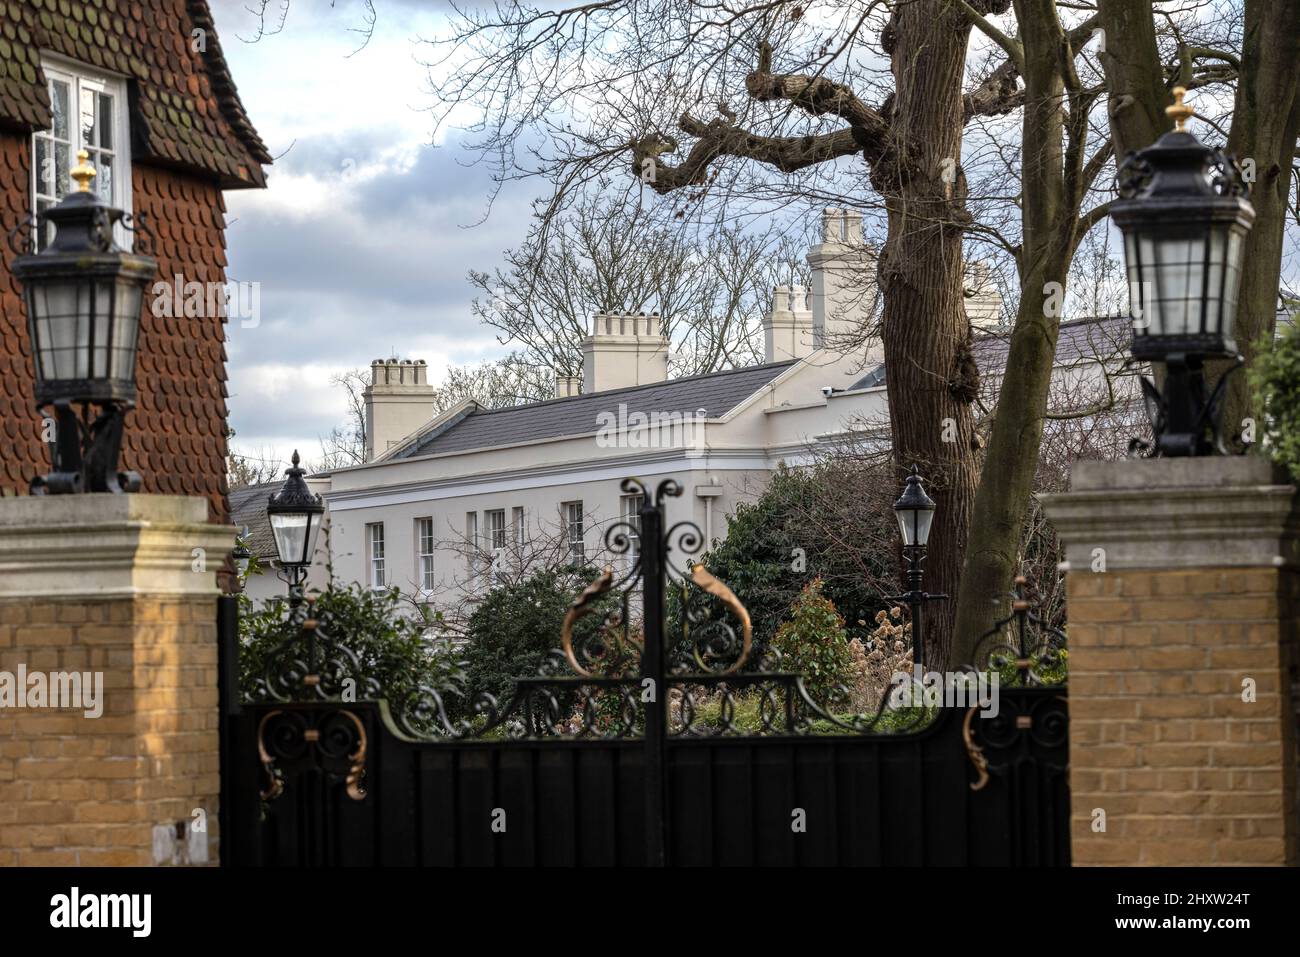 Sede della russa Oligarch Alisher Usmanov, che possiede i £48 milioni di Beechwood House a Hampstead Lane Highgate Hill, Londra settentrionale, Inghilterra, Regno Unito Foto Stock